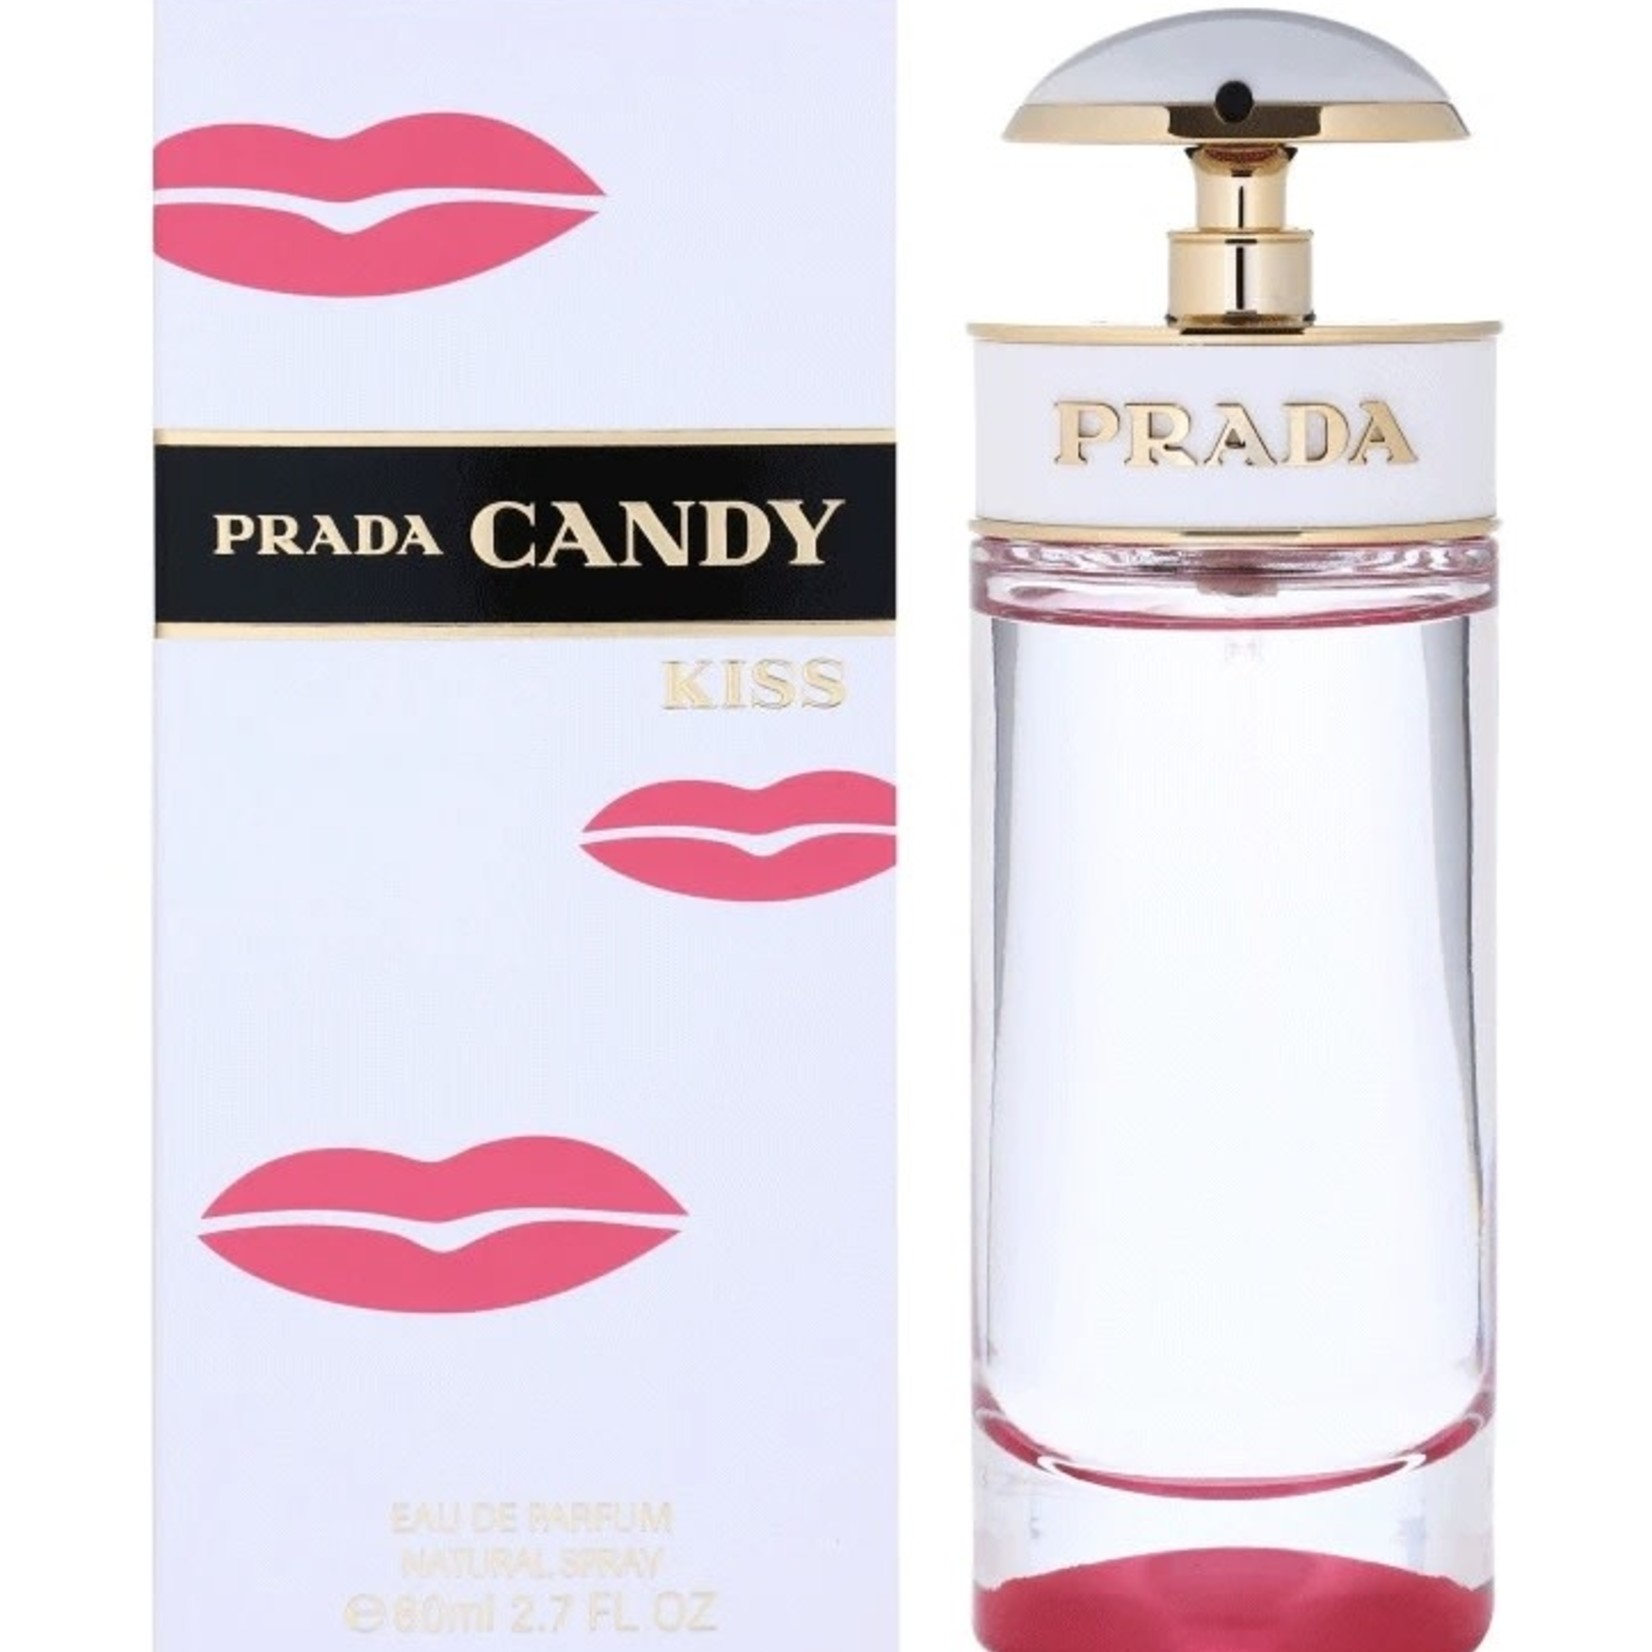 Prada Prada Candy Kiss Eau de Parfum